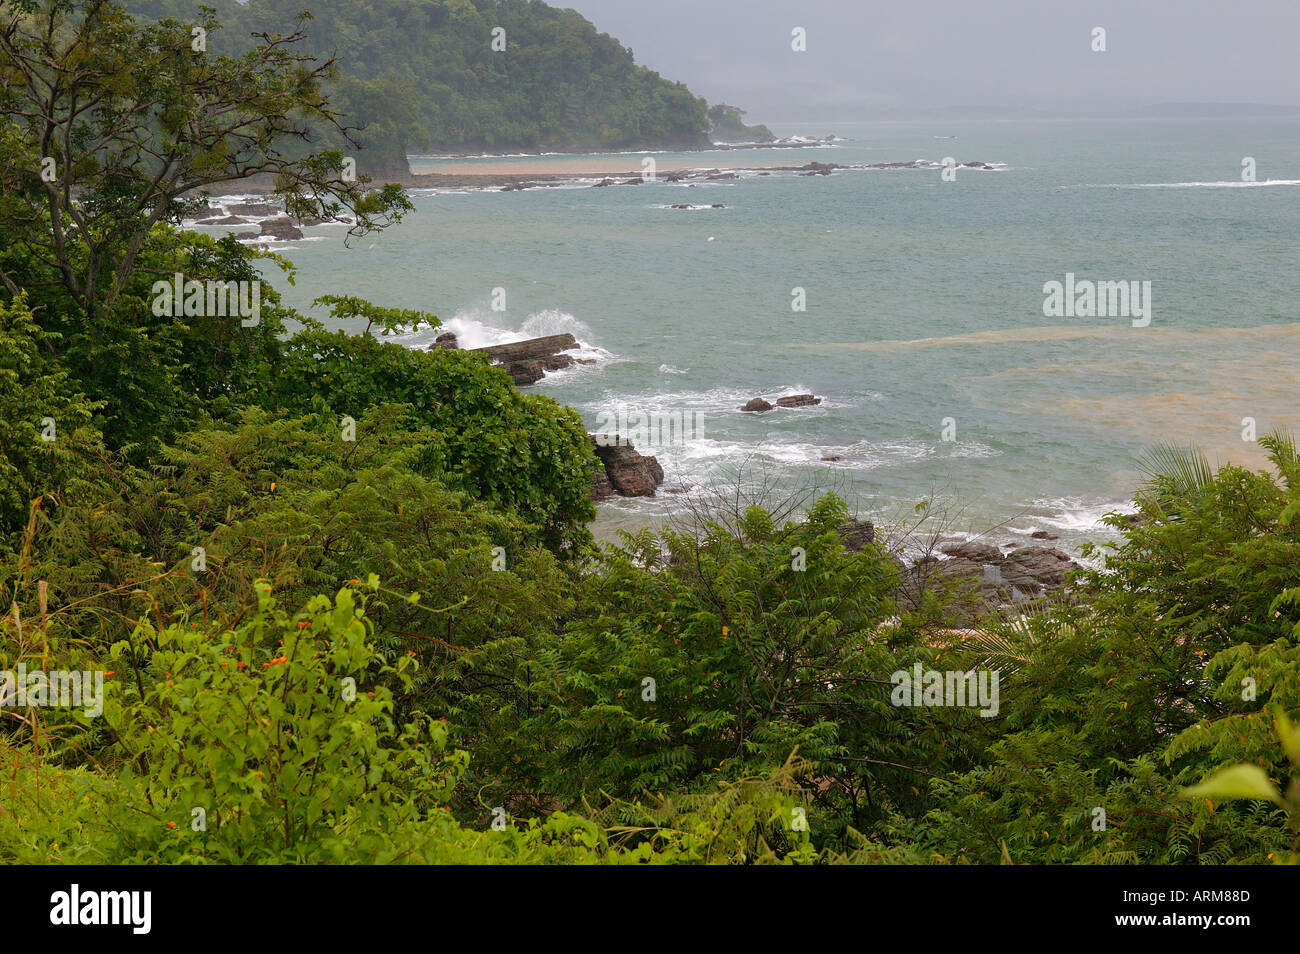 La costa justo al sur de Dominical Costa Rica Foto de stock